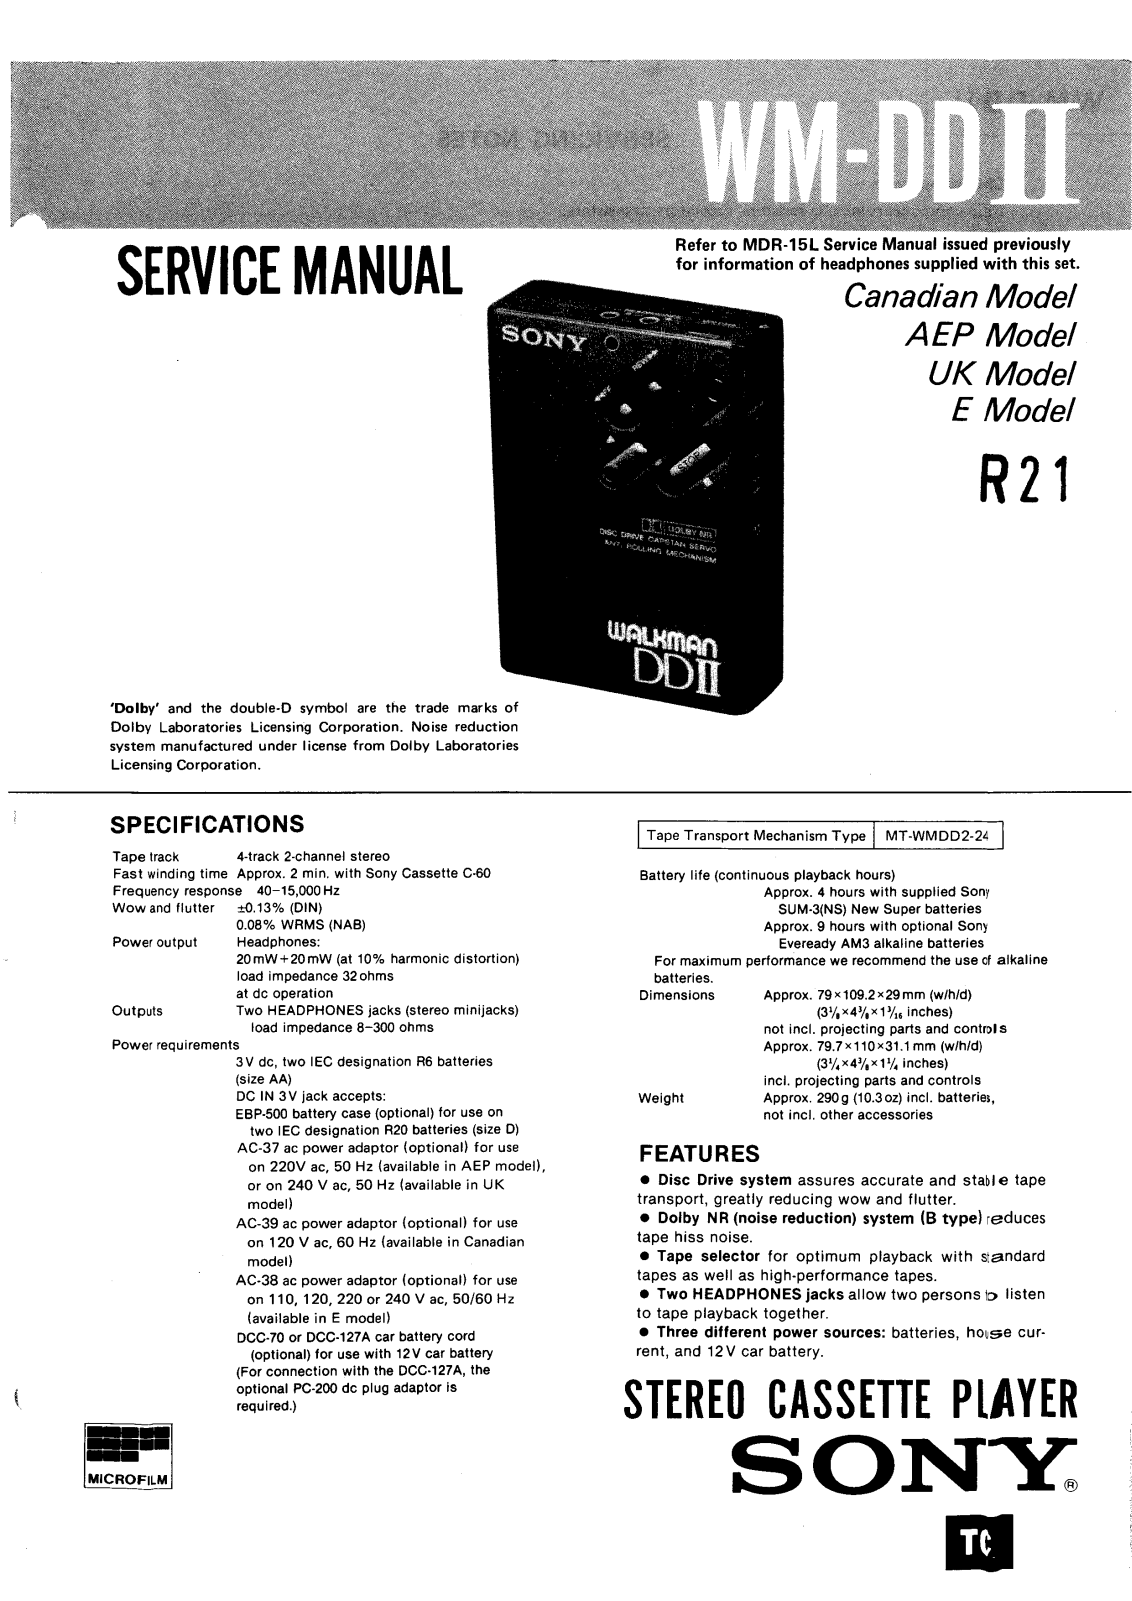 Sony WM-DD II Service Manual